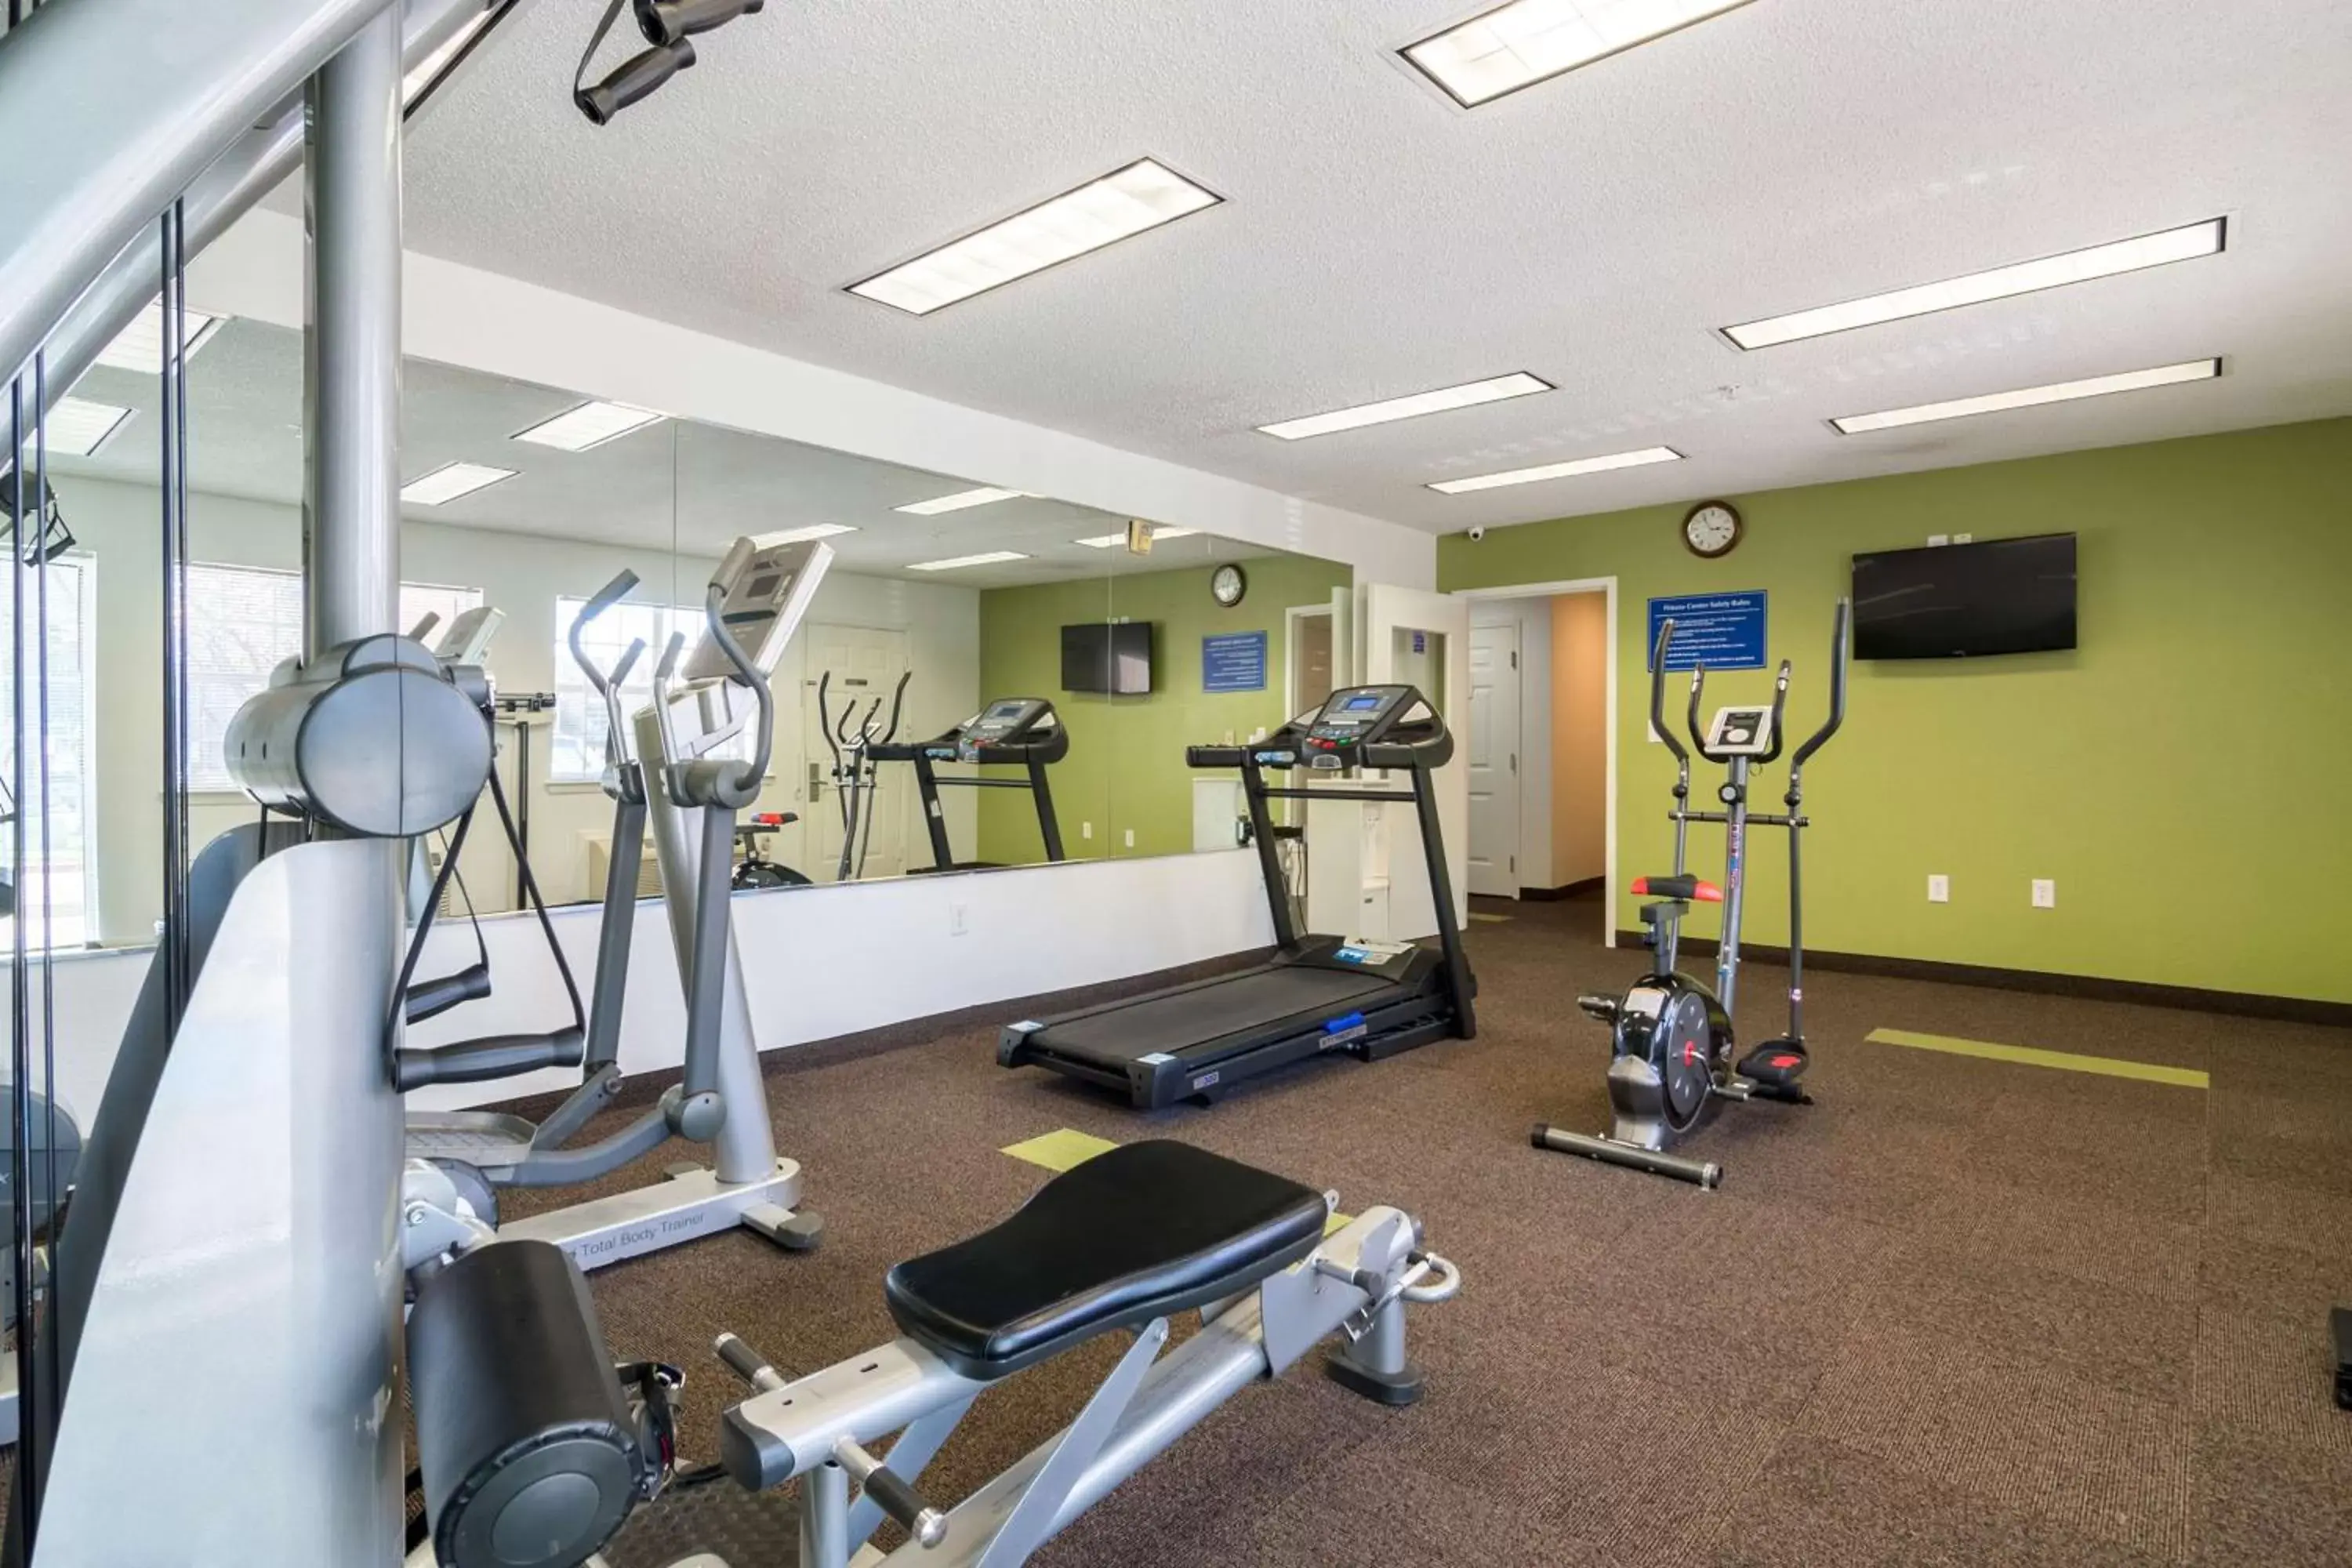 Fitness centre/facilities, Fitness Center/Facilities in Studio 6-Plano, TX - Dallas - Plano Medical Center